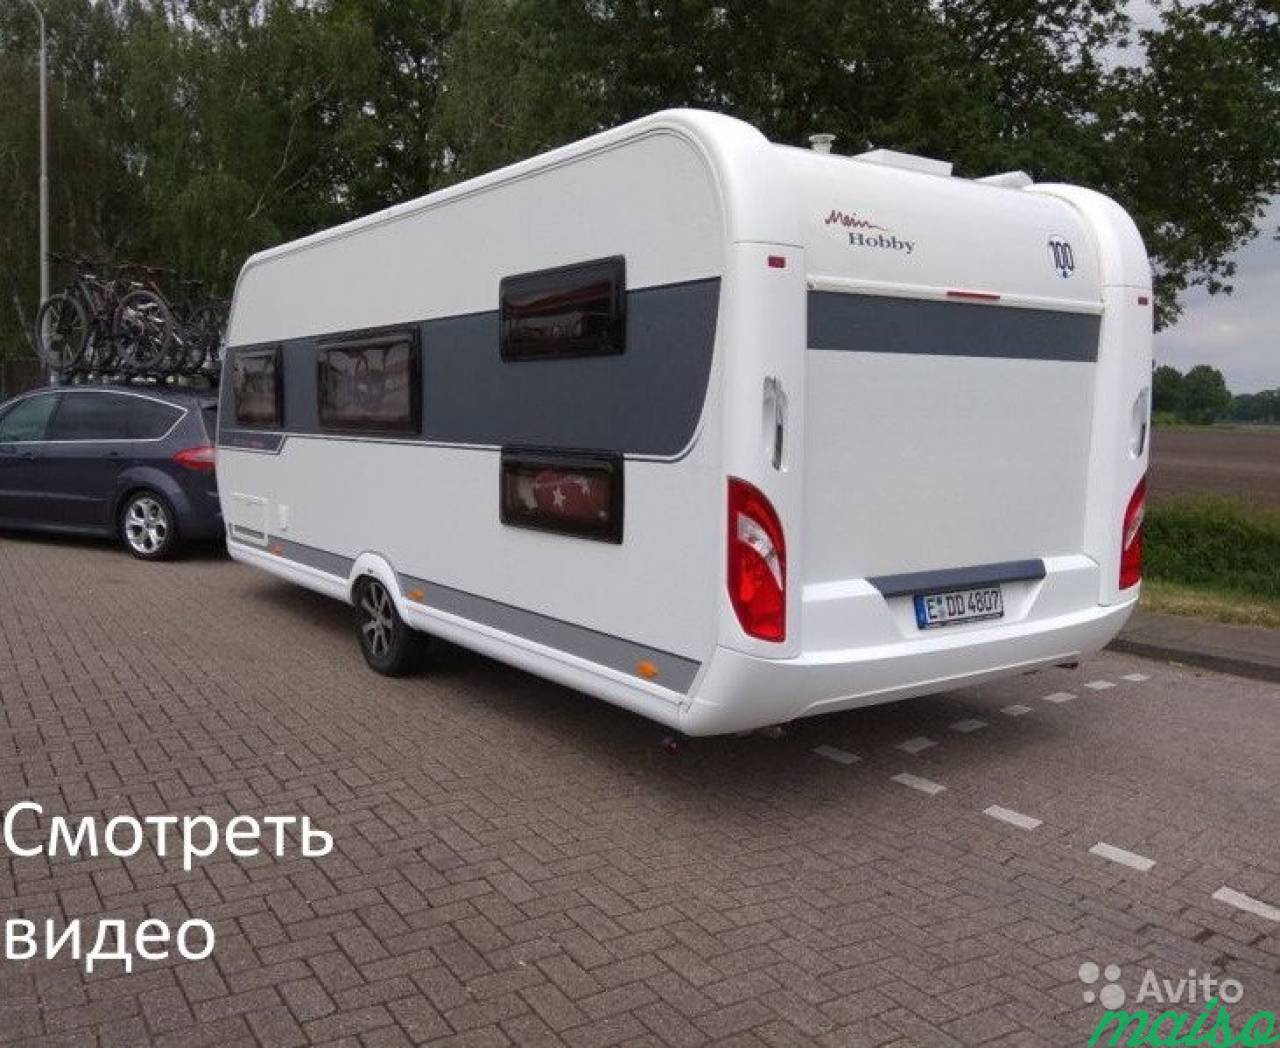 Дом на колесах Hobby De Luxe Edition 545 KMF 2019г в Санкт-Петербурге. Фото 2